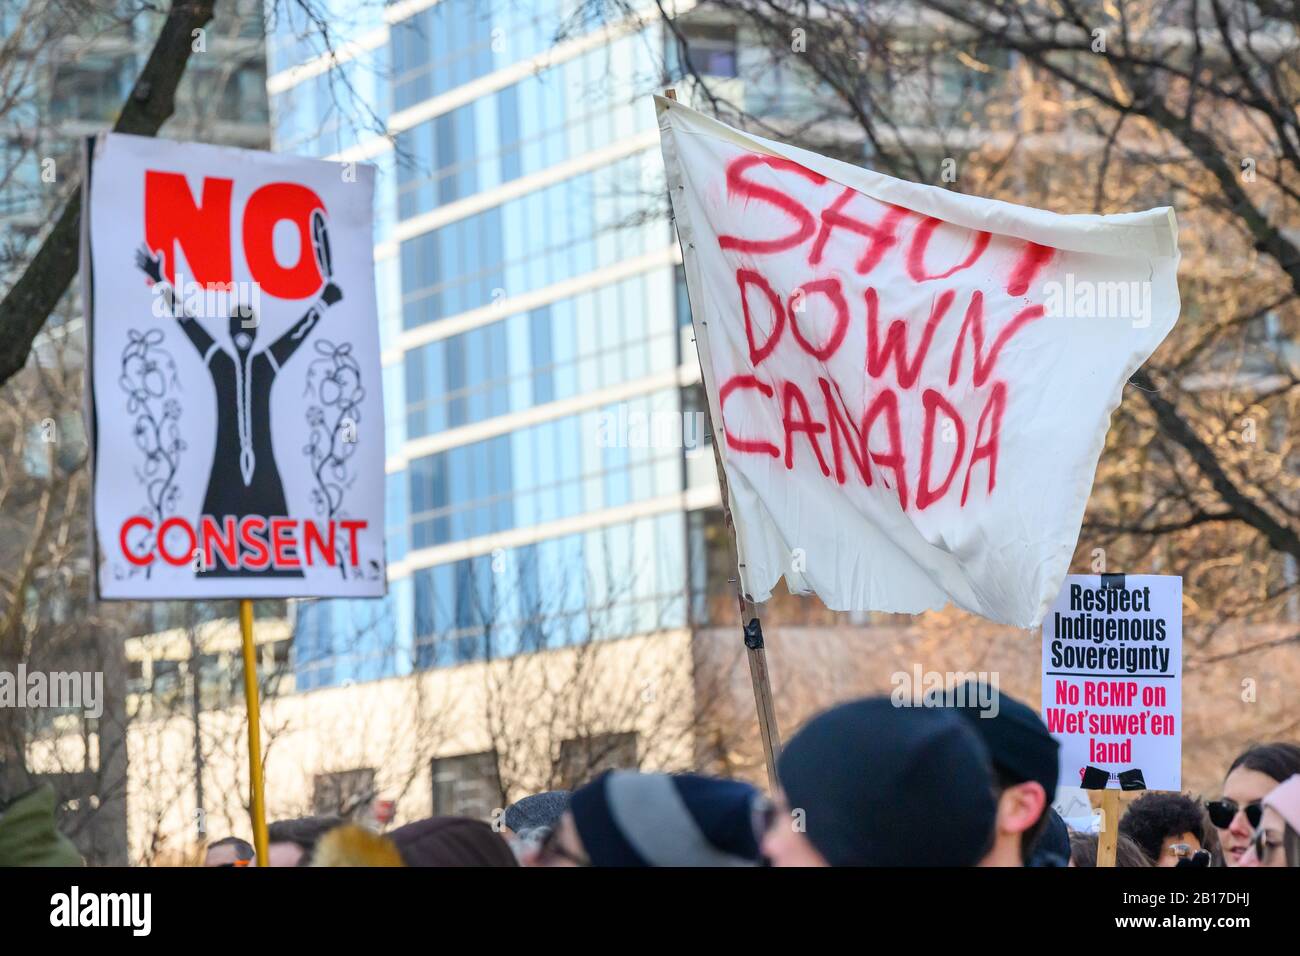 Zeichen, die keine Zustimmung erklären und Kanada Ausschalten, werden stolz während eines Protestes in Solidarität mit dem Wet'suwet'en angezeigt. Stockfoto